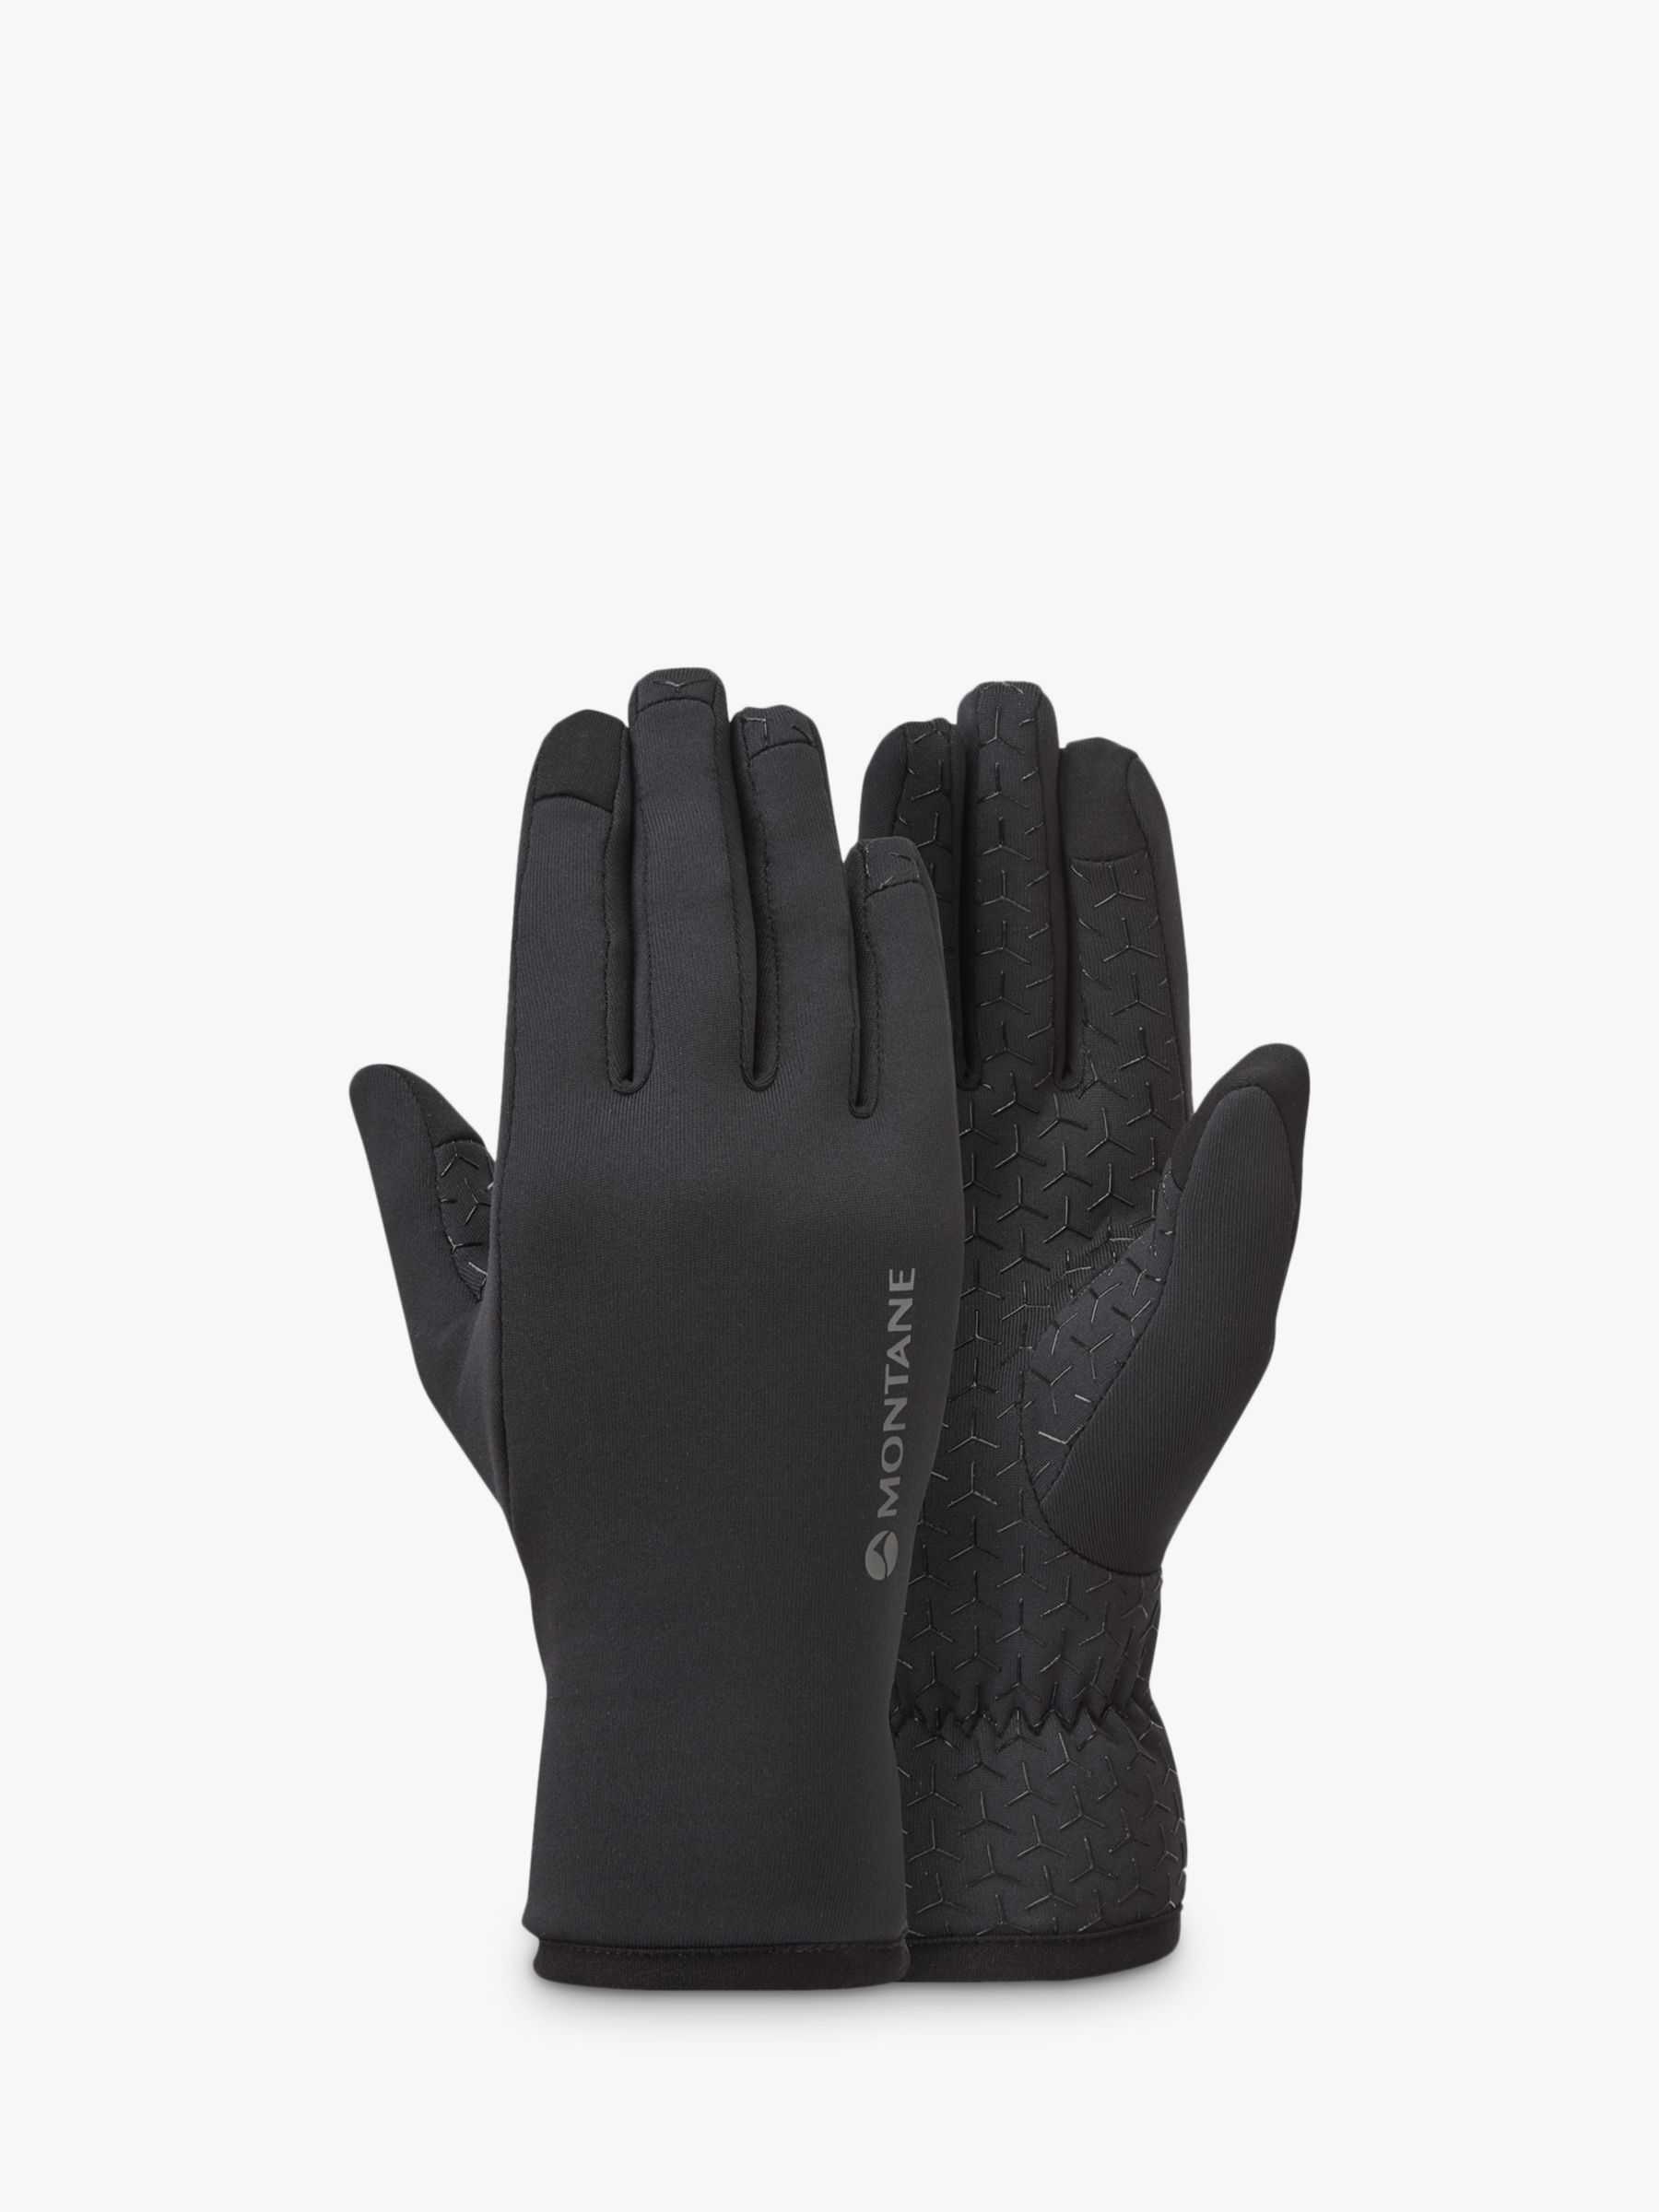 Montane Women's Fury XT Stretch Gloves, Black, XS